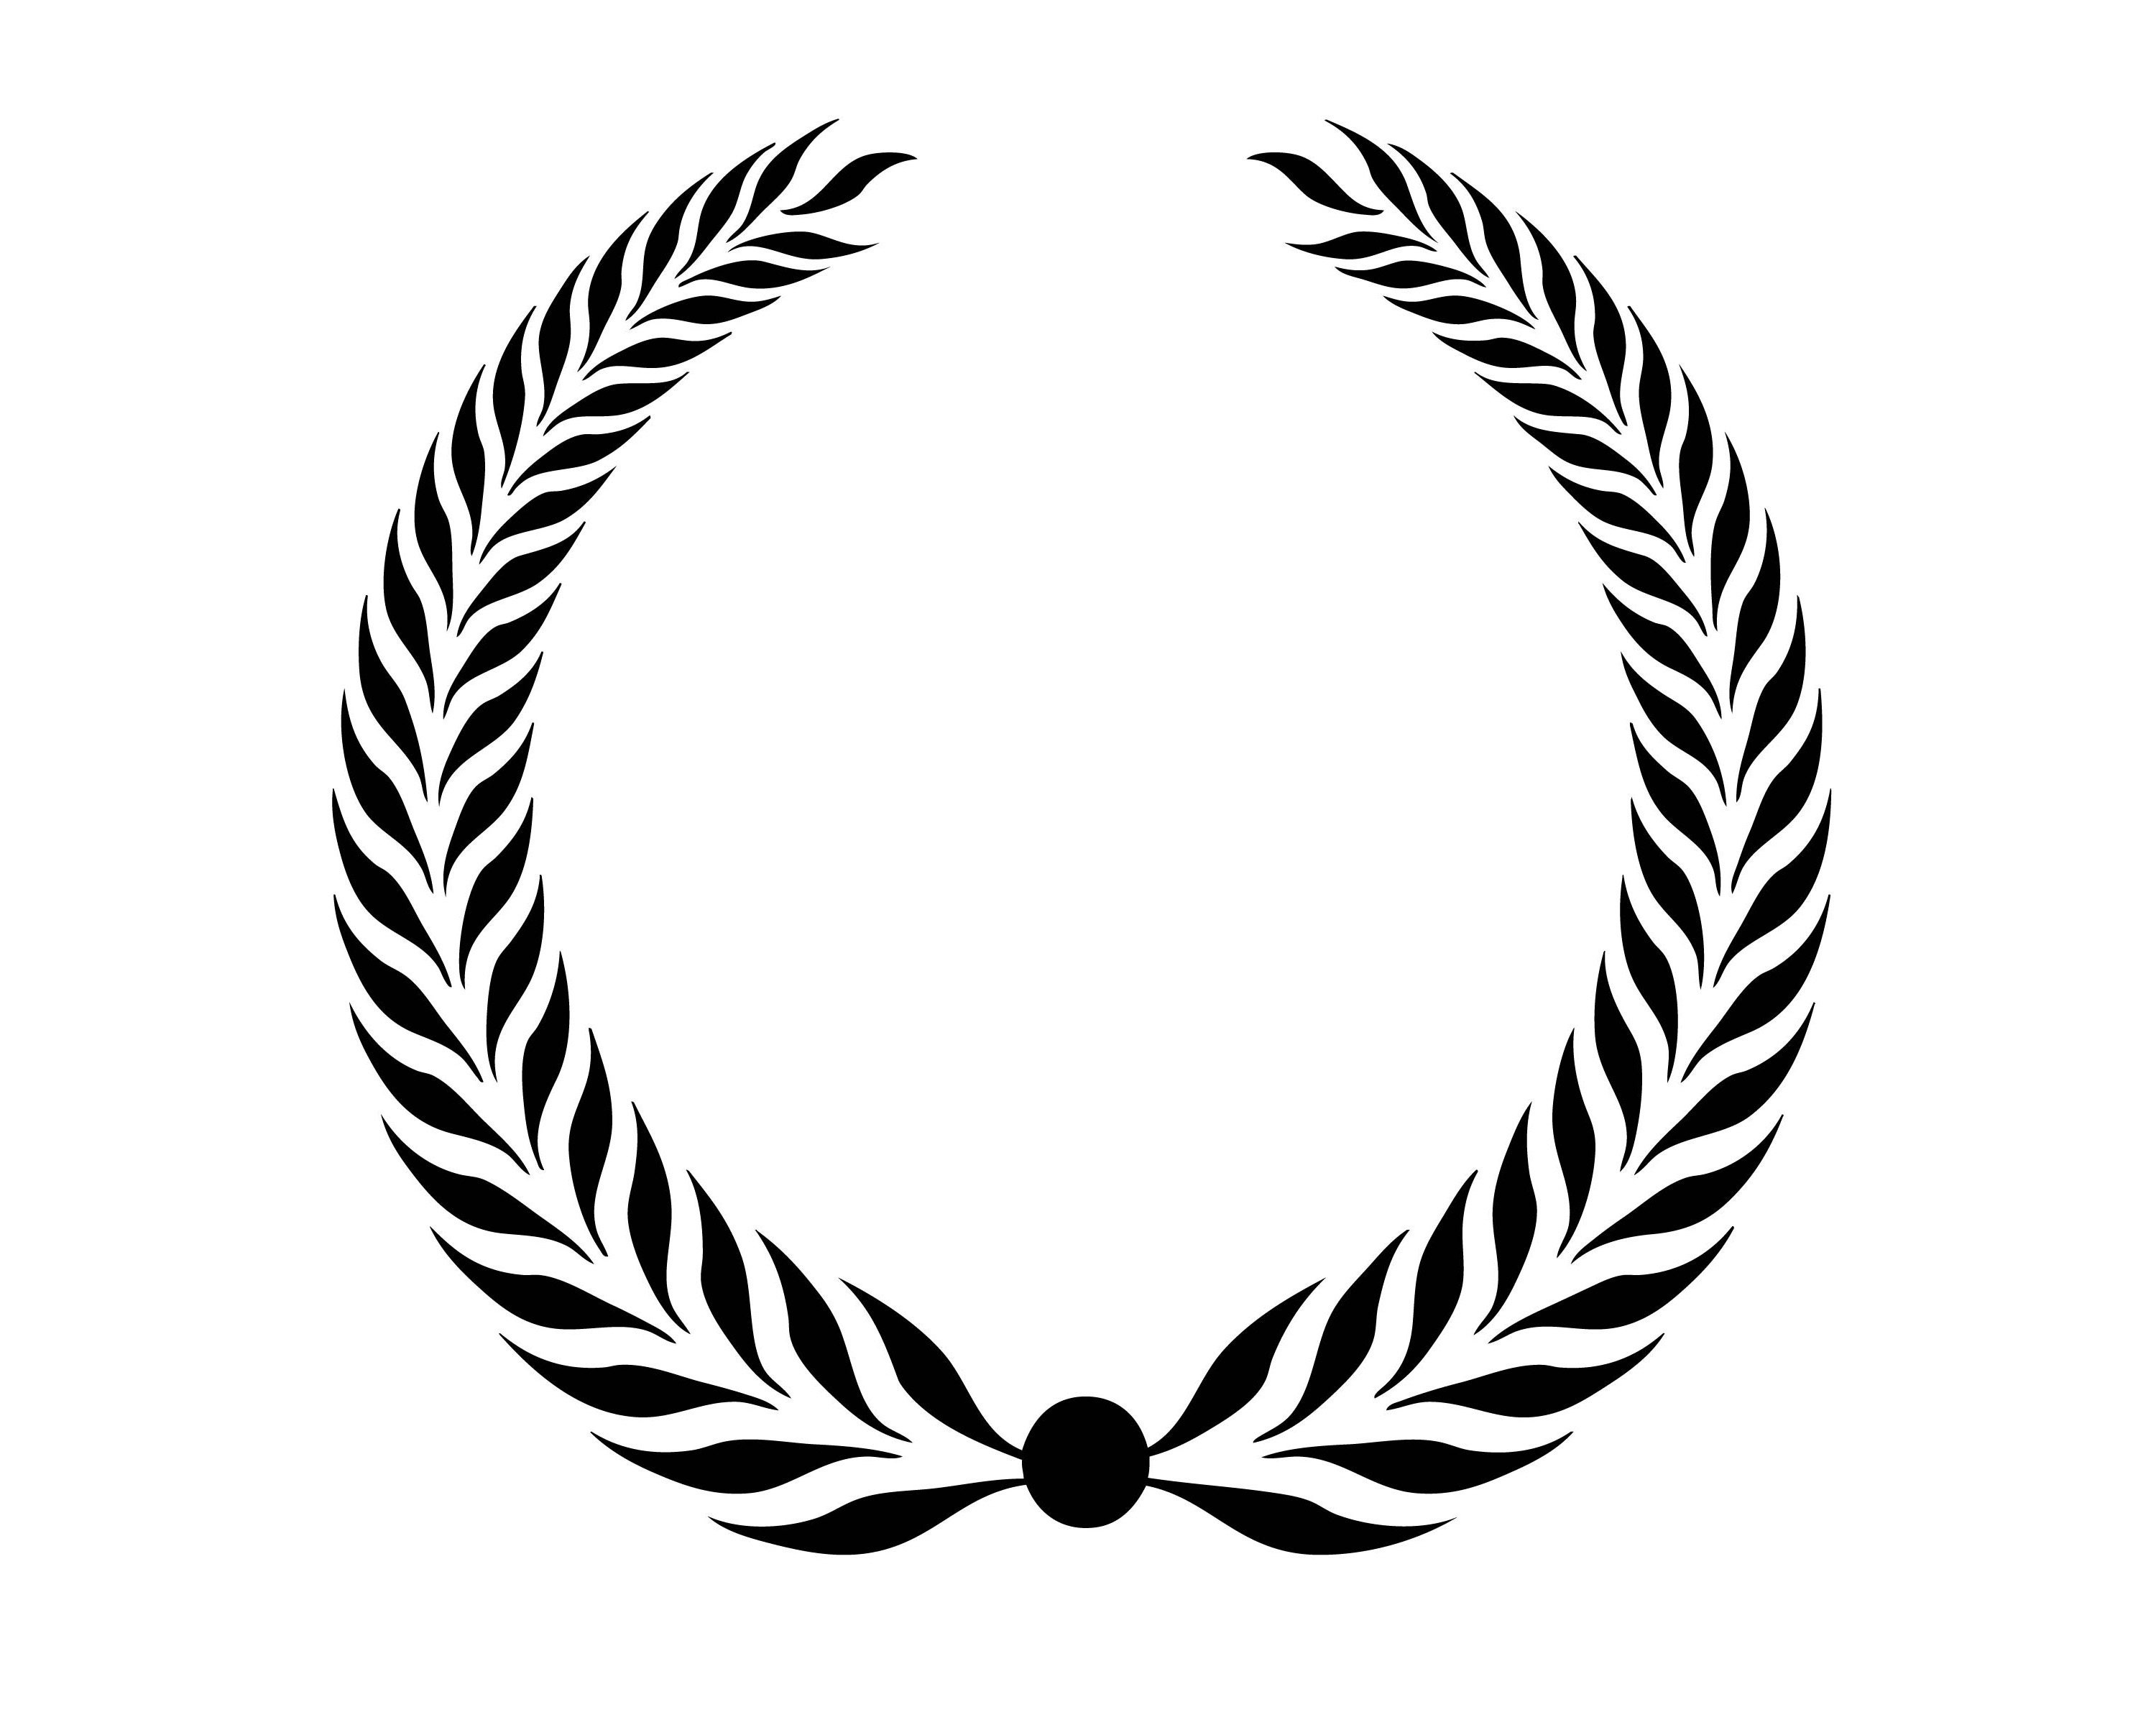 Wreath Olive Branch Leaves Logo Design Element Emblem Label | Etsy